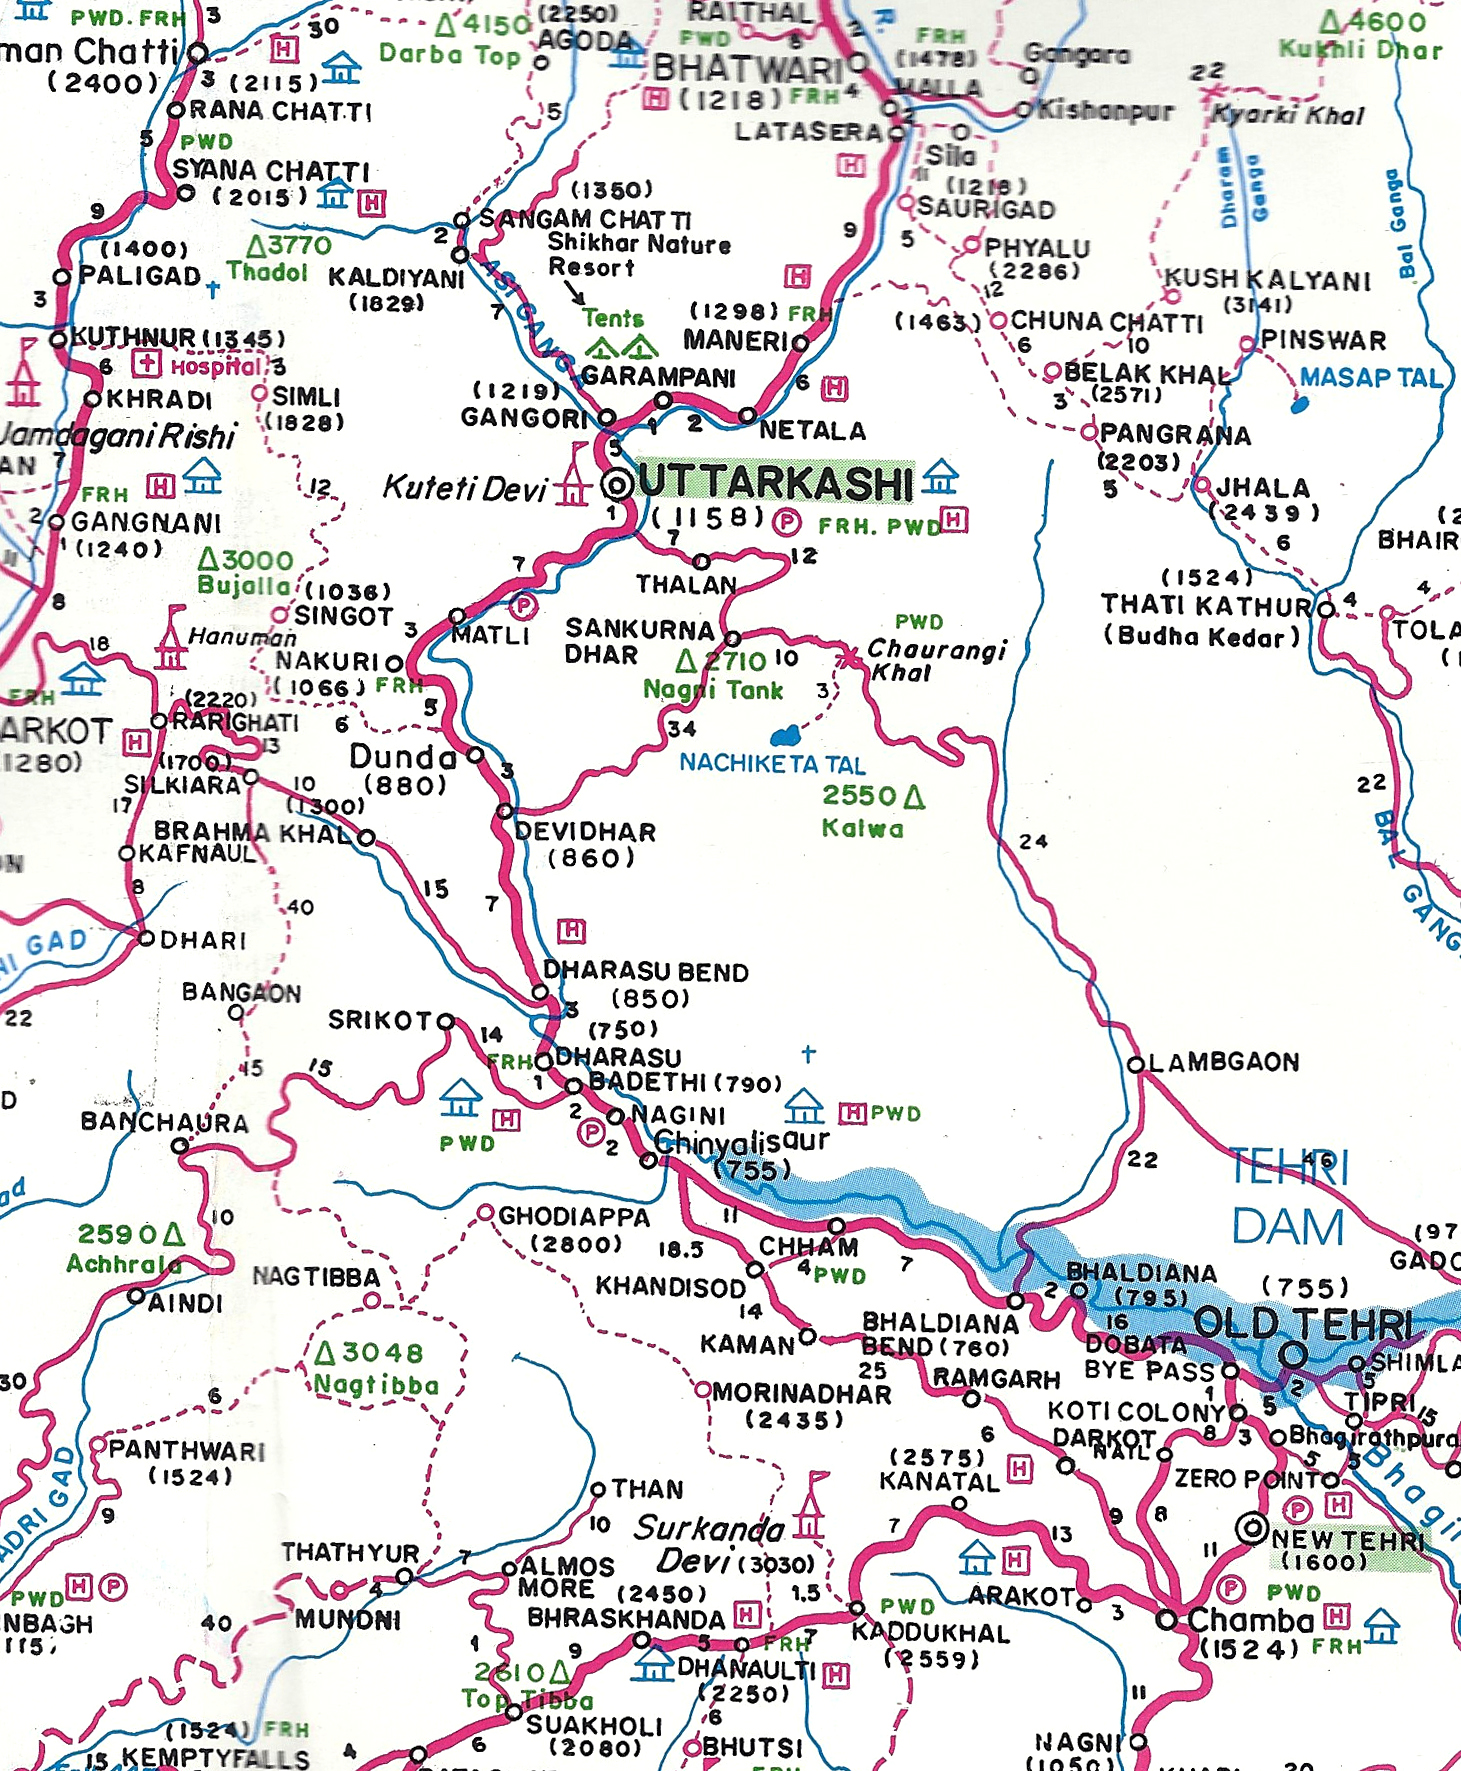 Exemple de carte locale achetée dans le nord de l'Inde. Ici une région montagneuse de l’Himalaya.